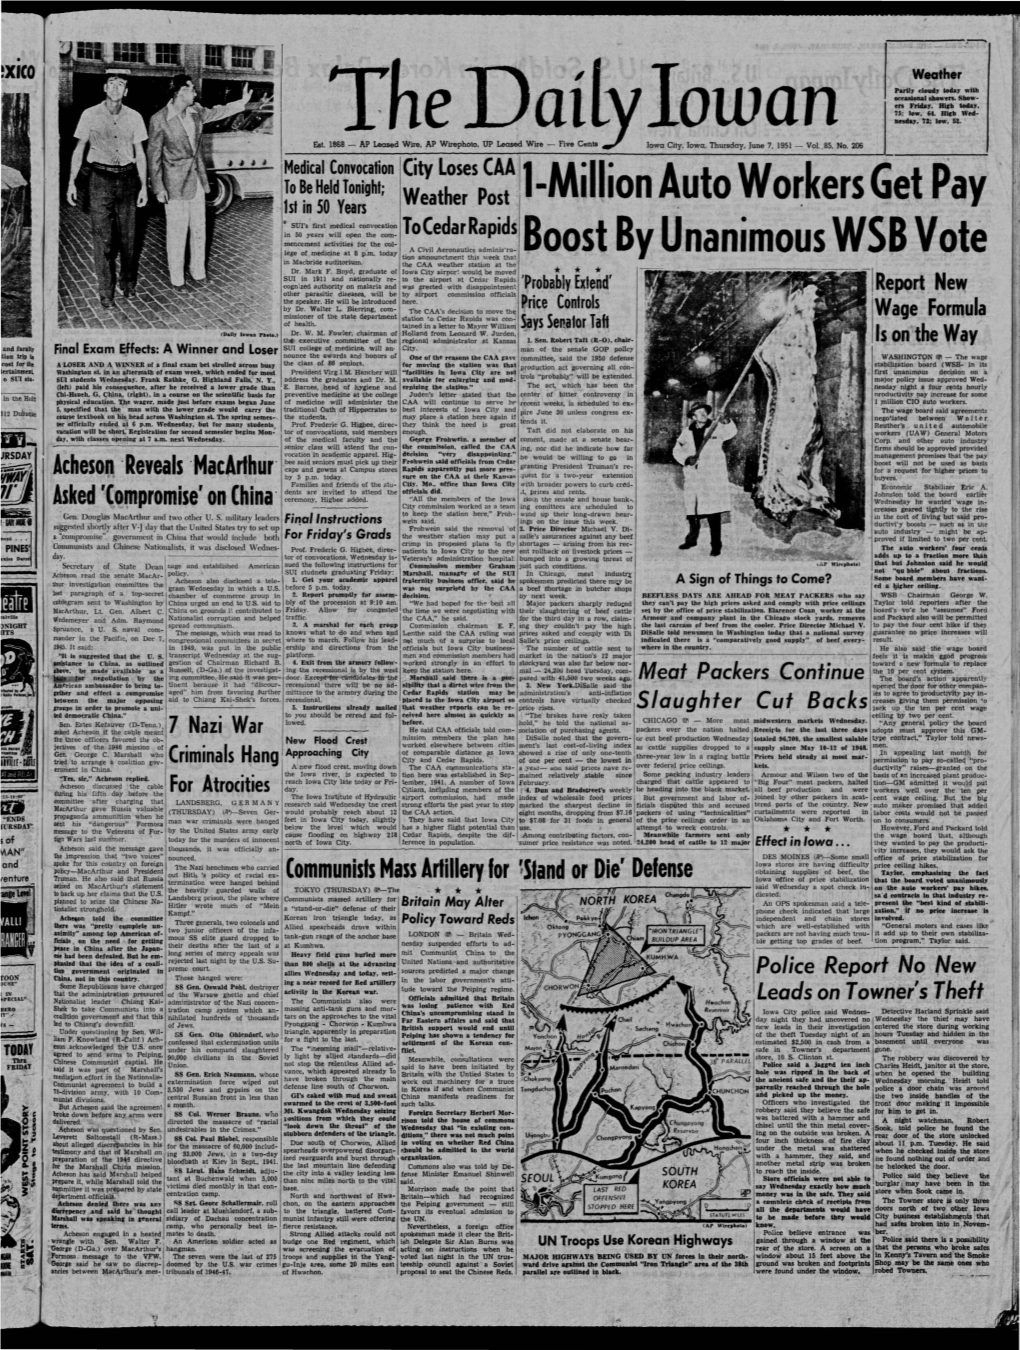 Daily Iowan (Iowa City, Iowa), 1951-06-07